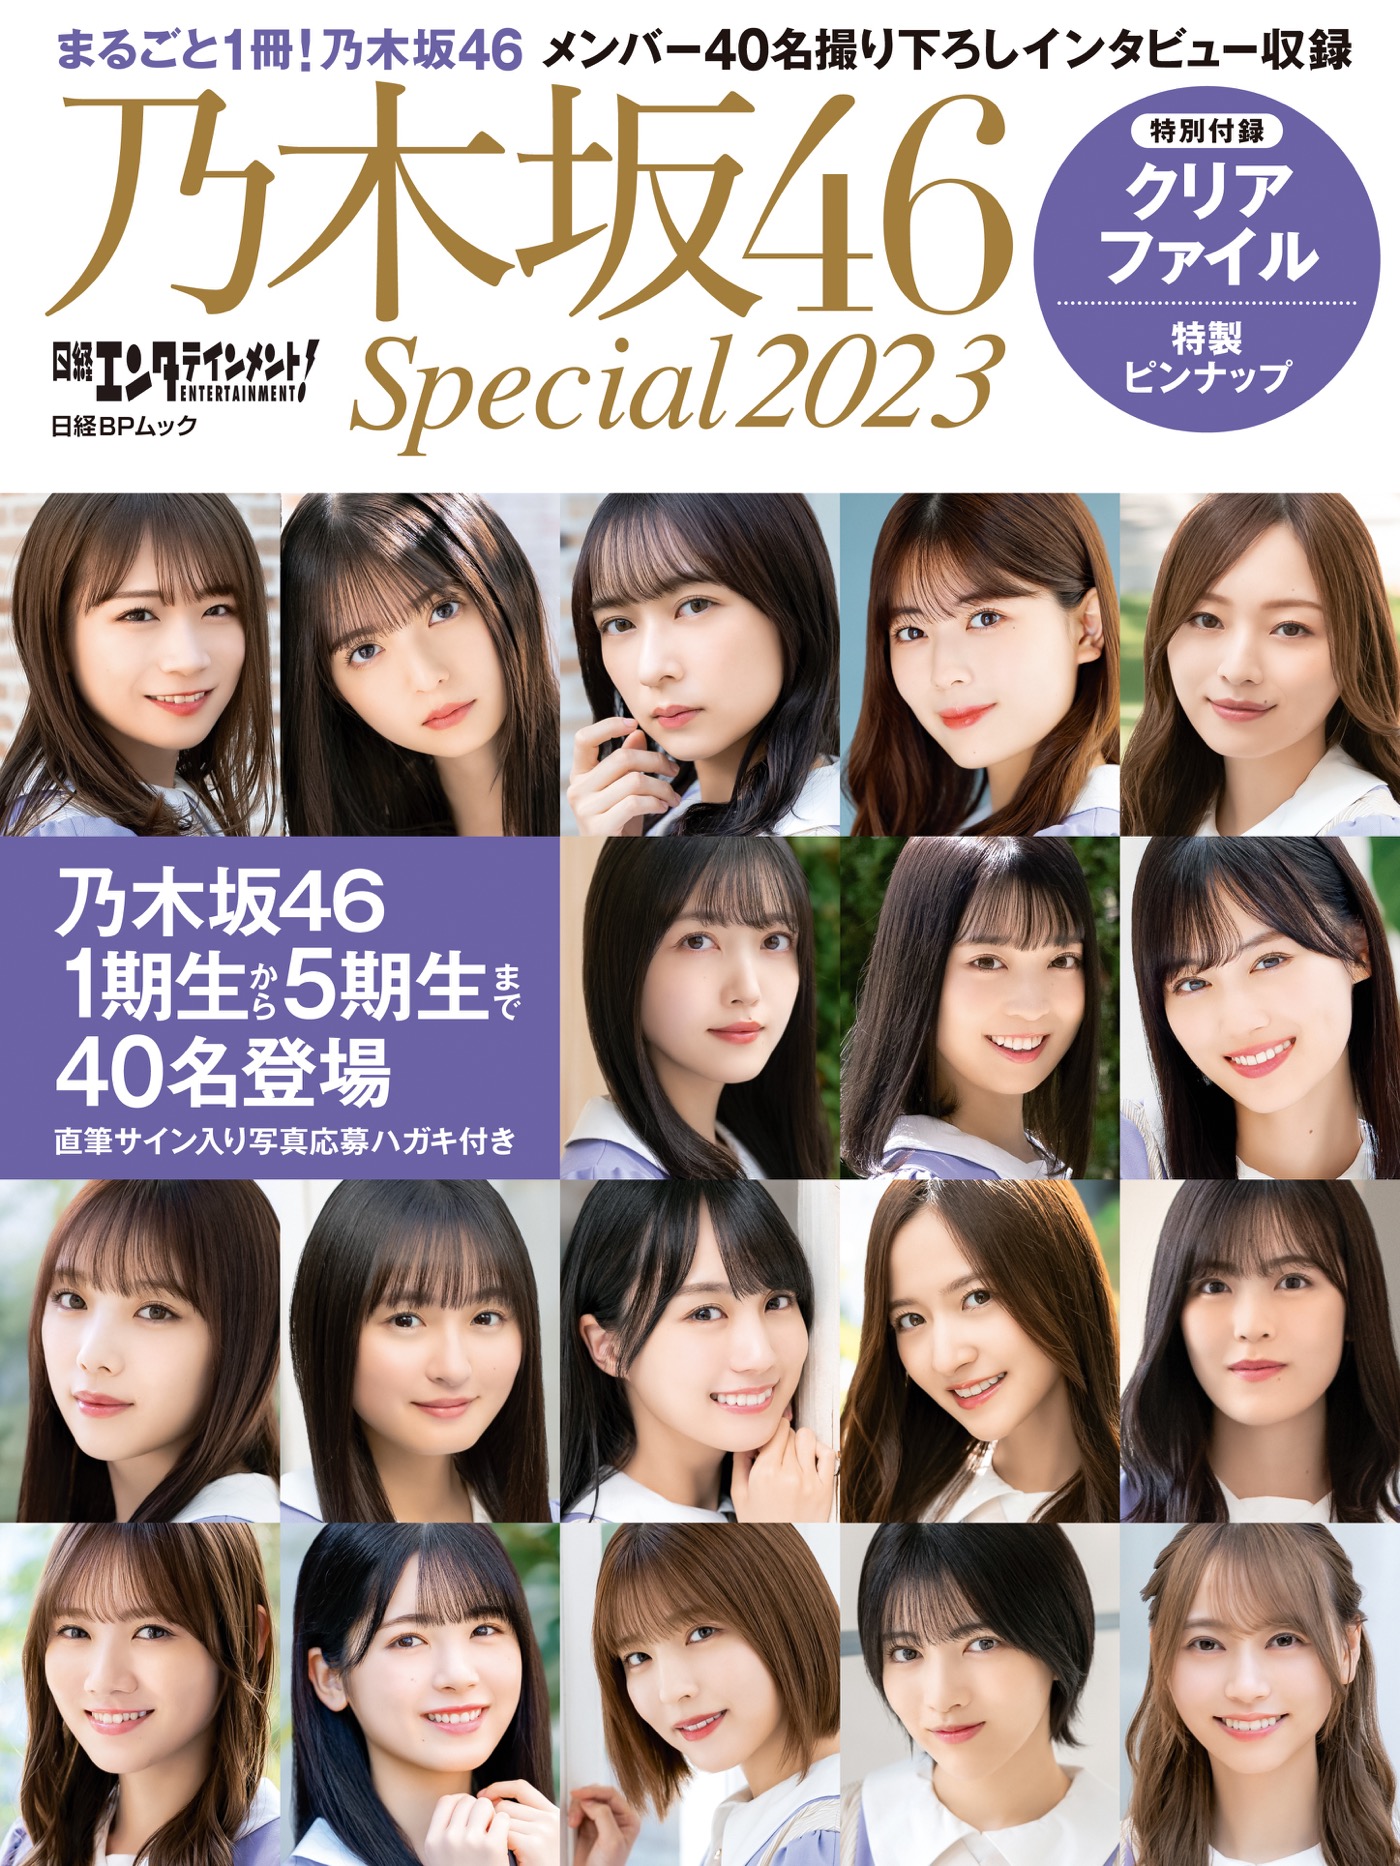 乃木坂46、40名が登場する『日経エンタテインメント! 乃木坂46 Special 2023』発売決定